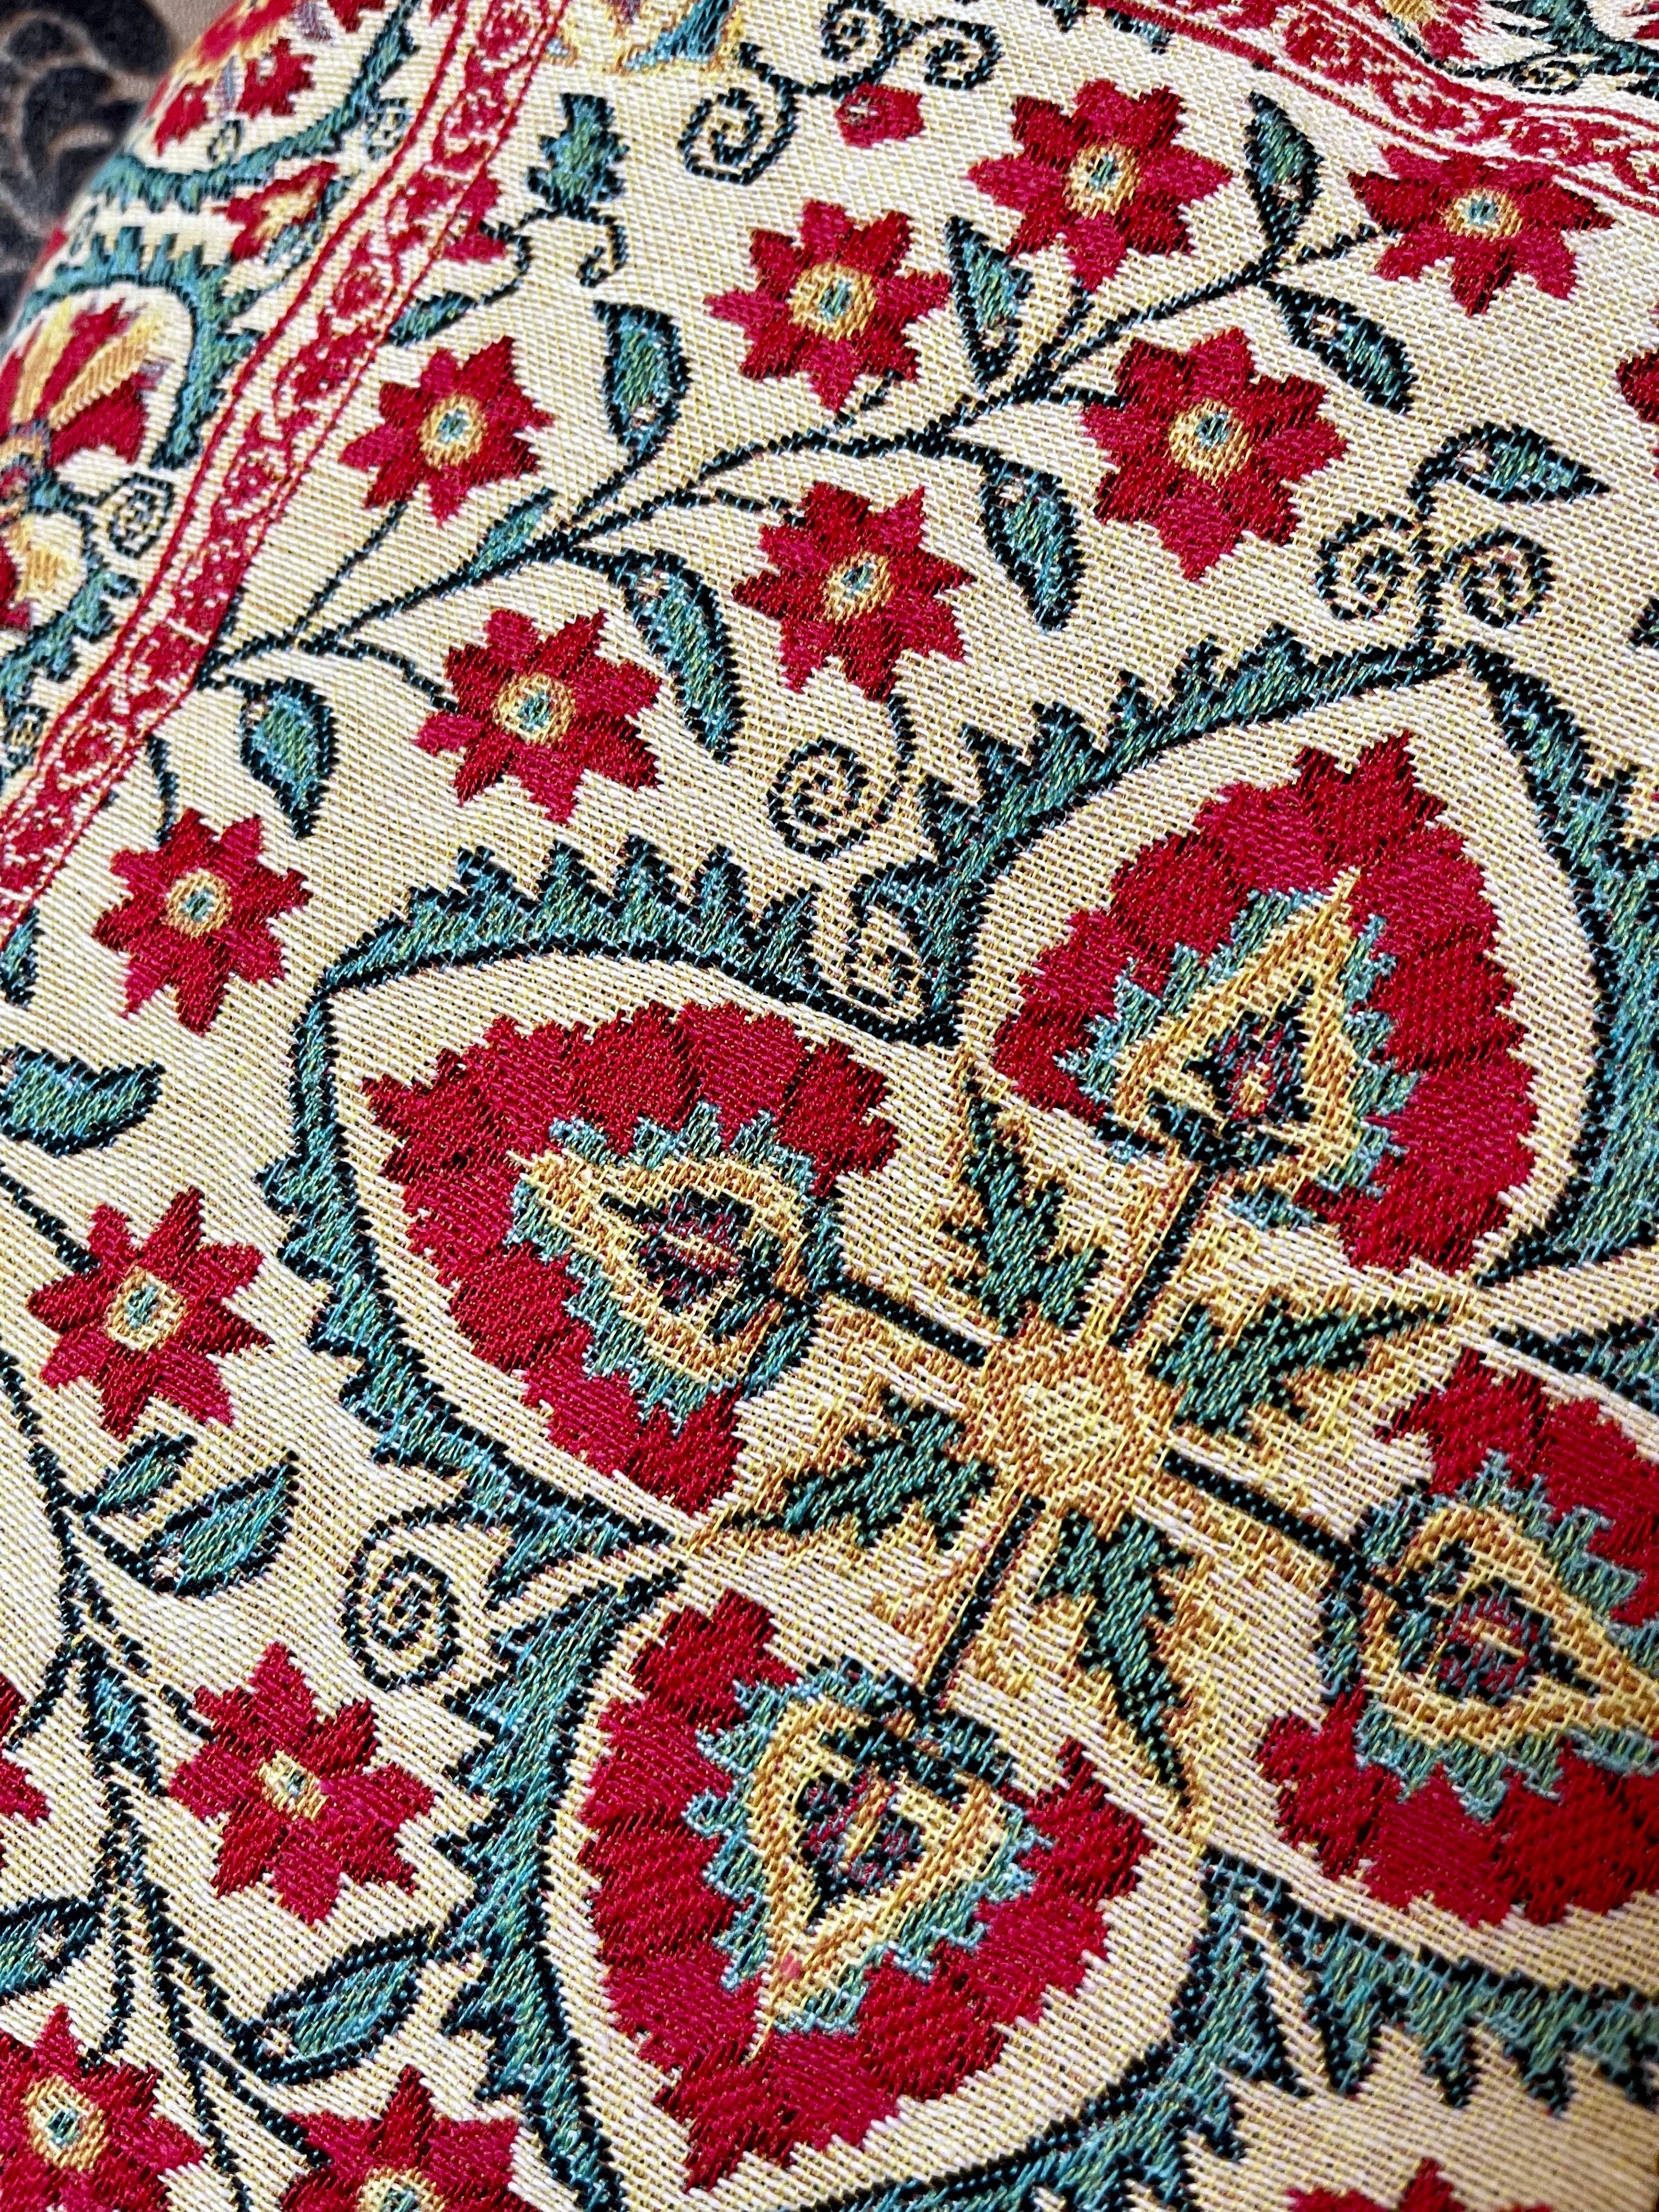 Rolande du Dreuilh—France | Floral Tapestry Pillow